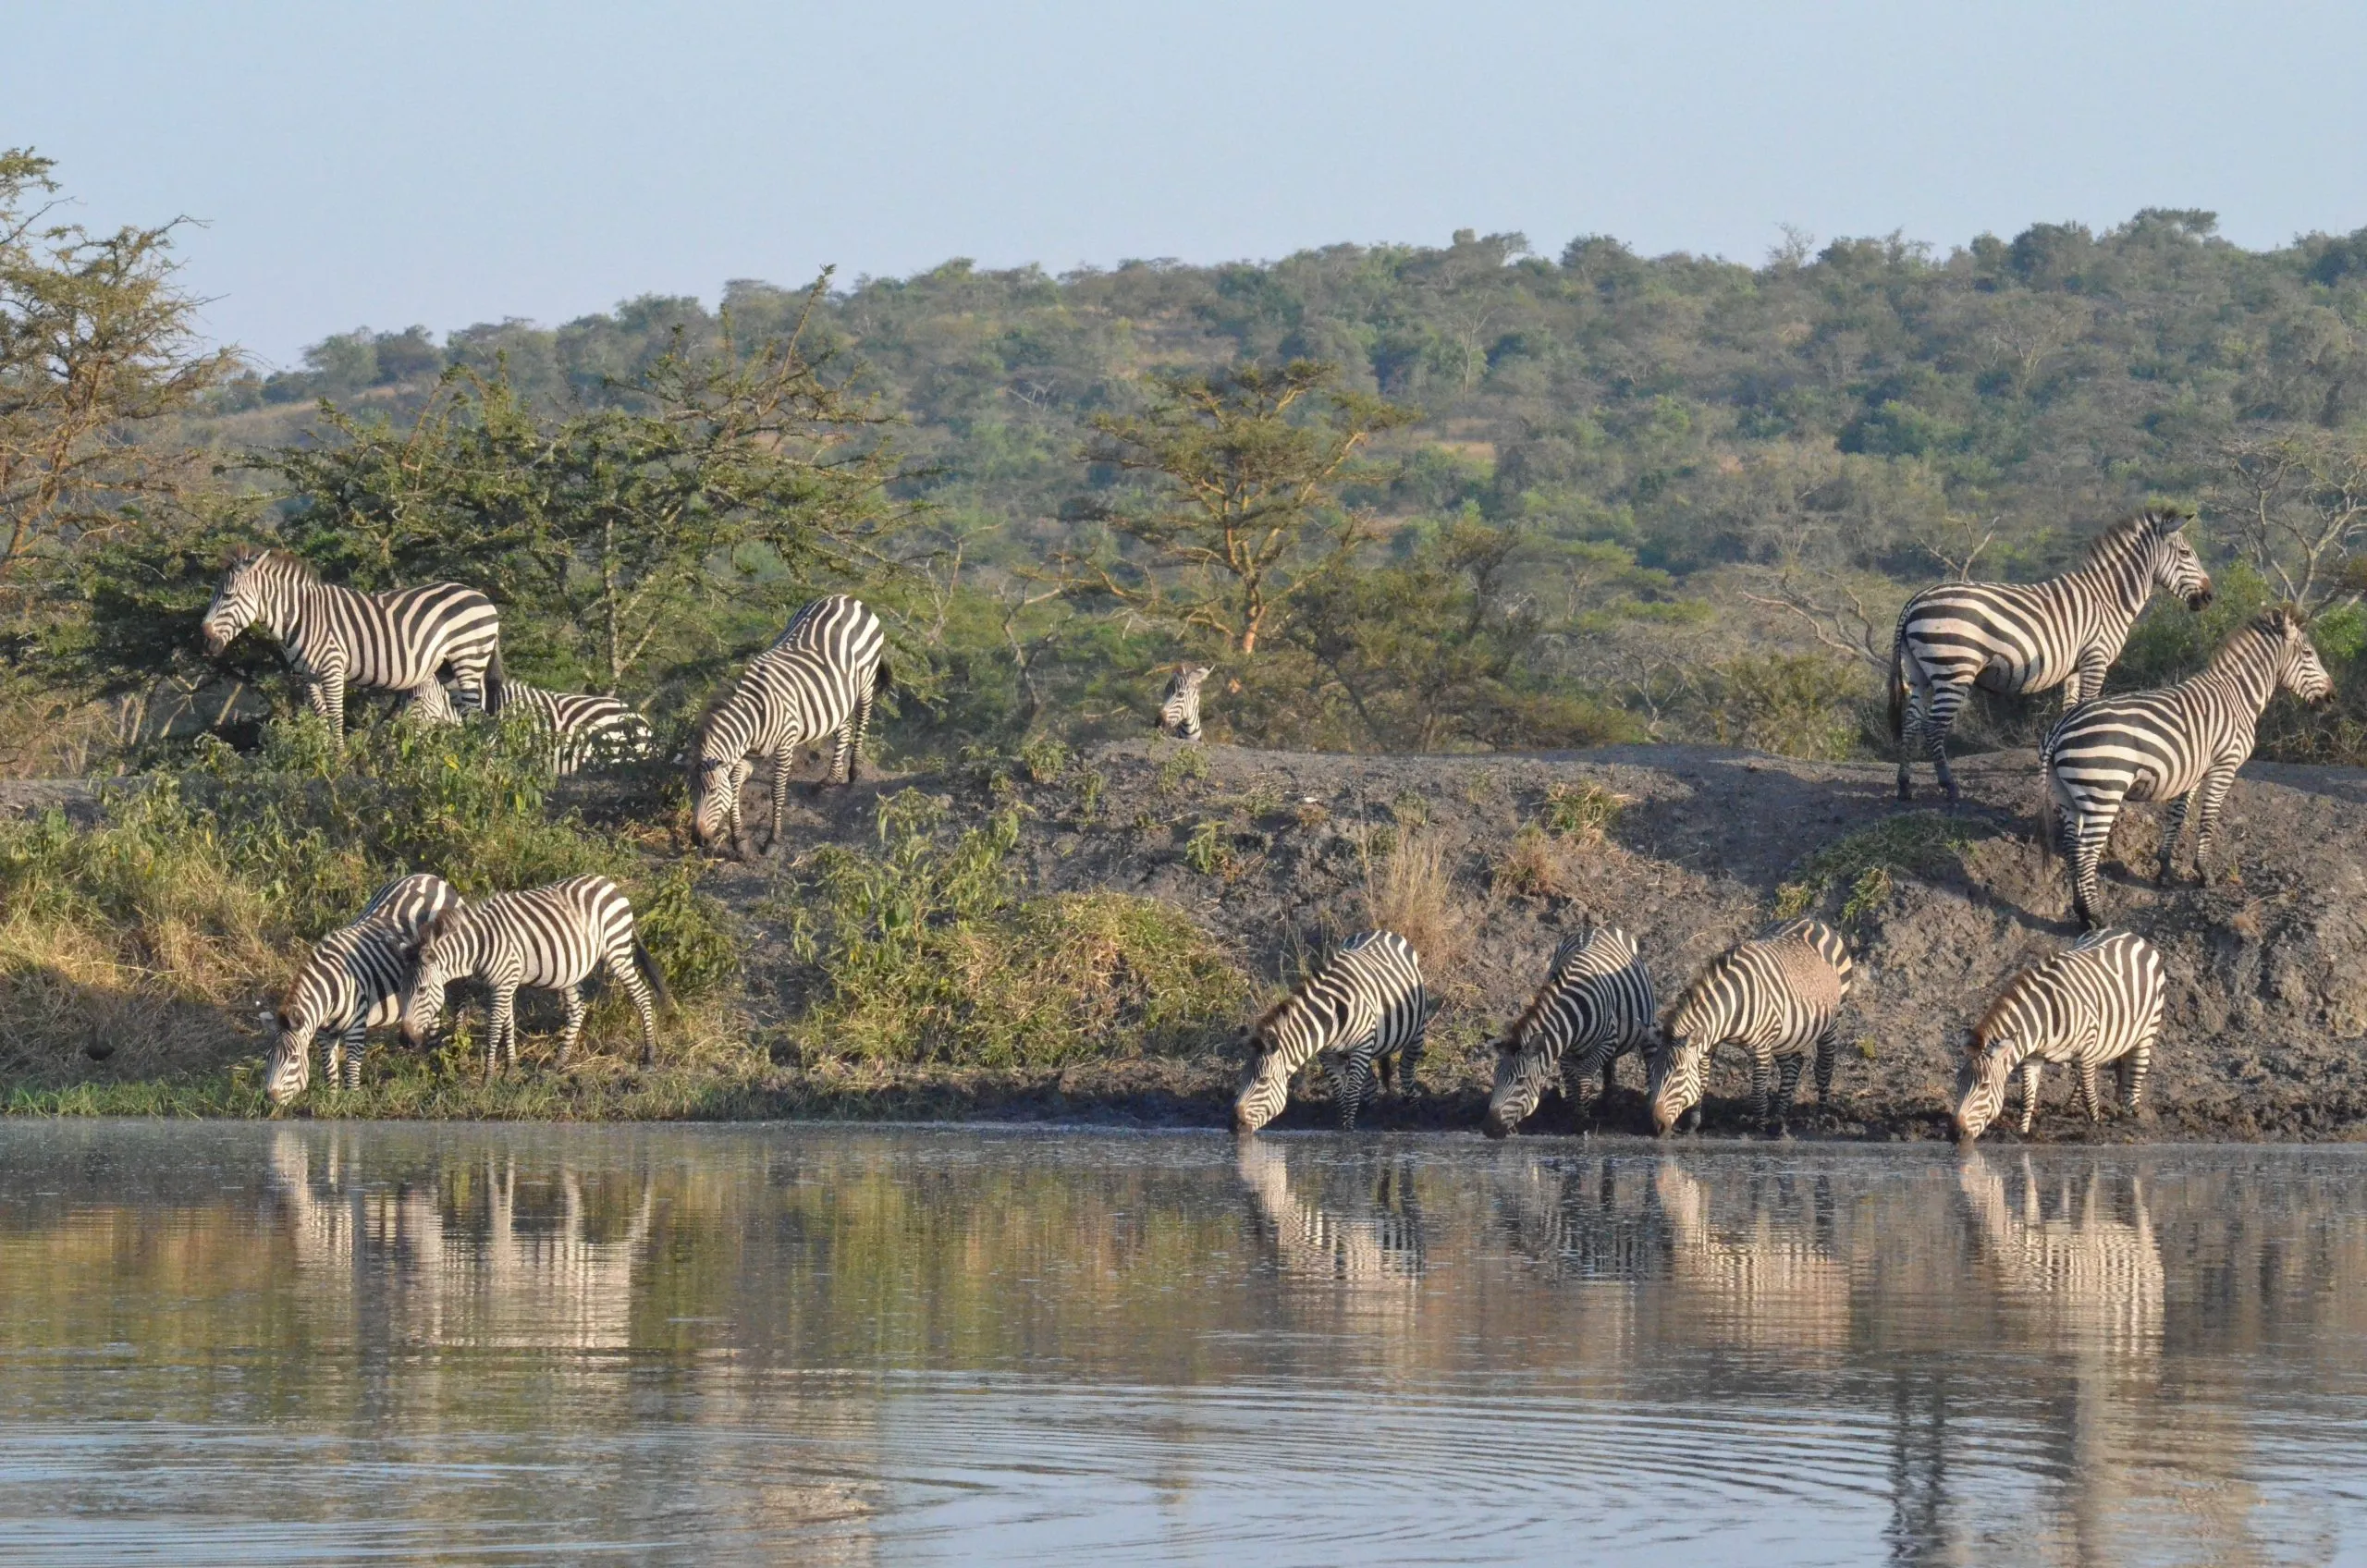 Gruppo di zebre nel parco nazionale del lago Mburo in Uganda